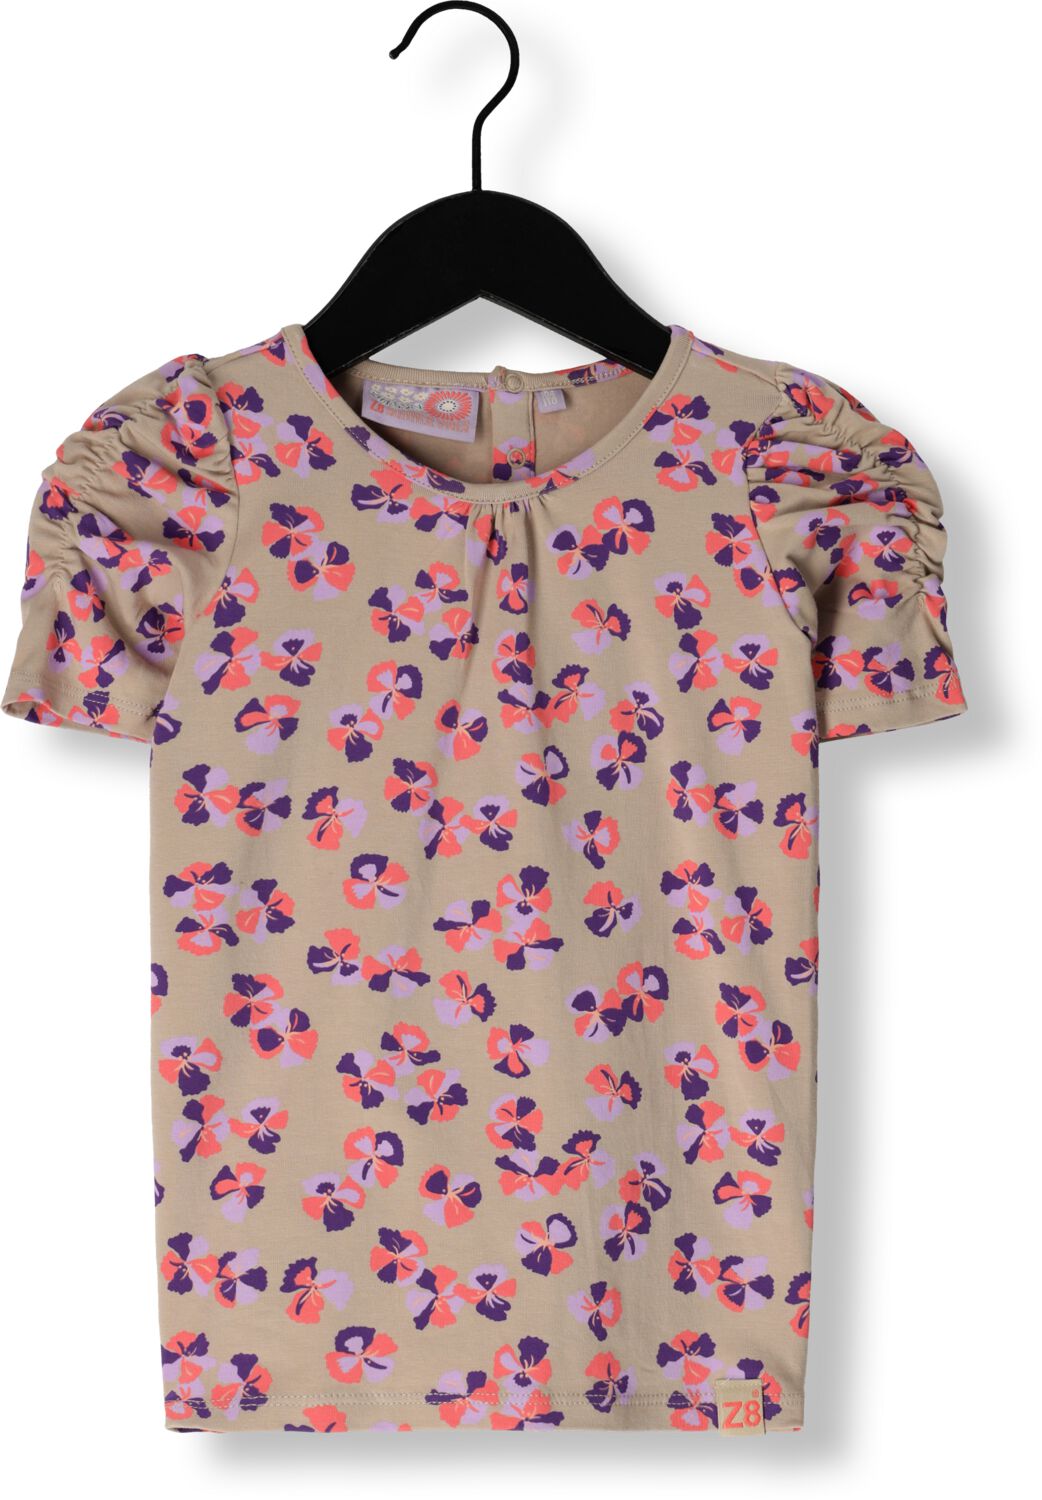 Z8 Meisjes Tops & T-shirts Yakira Zand